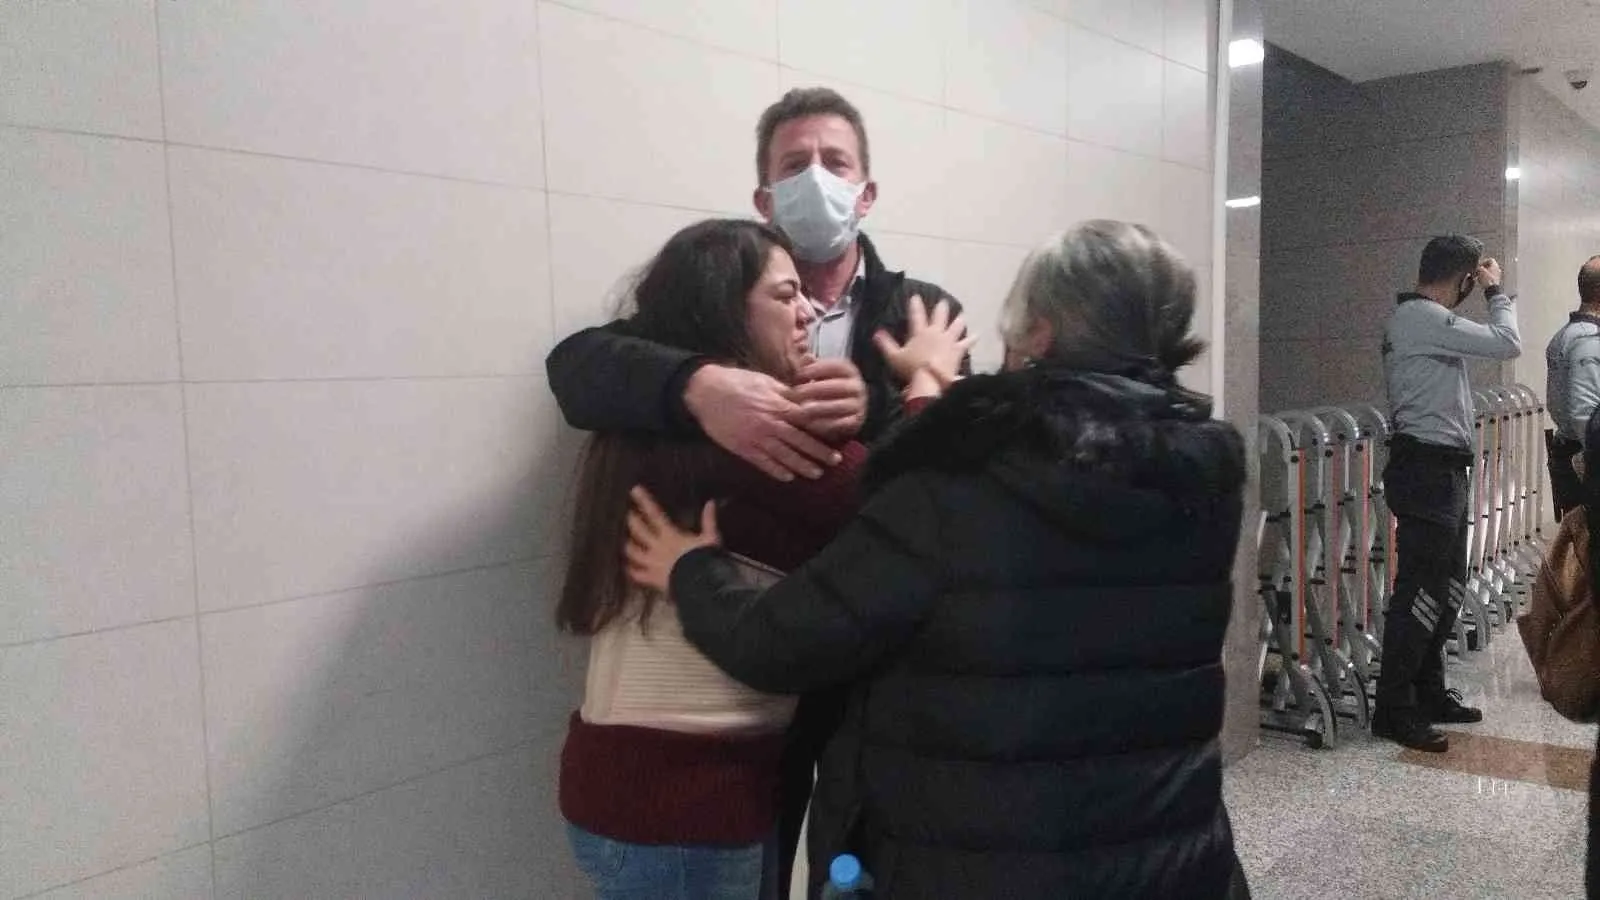 Eski kız arkadaşına kurşun yağdıran sanığa hapis cezası #istanbul